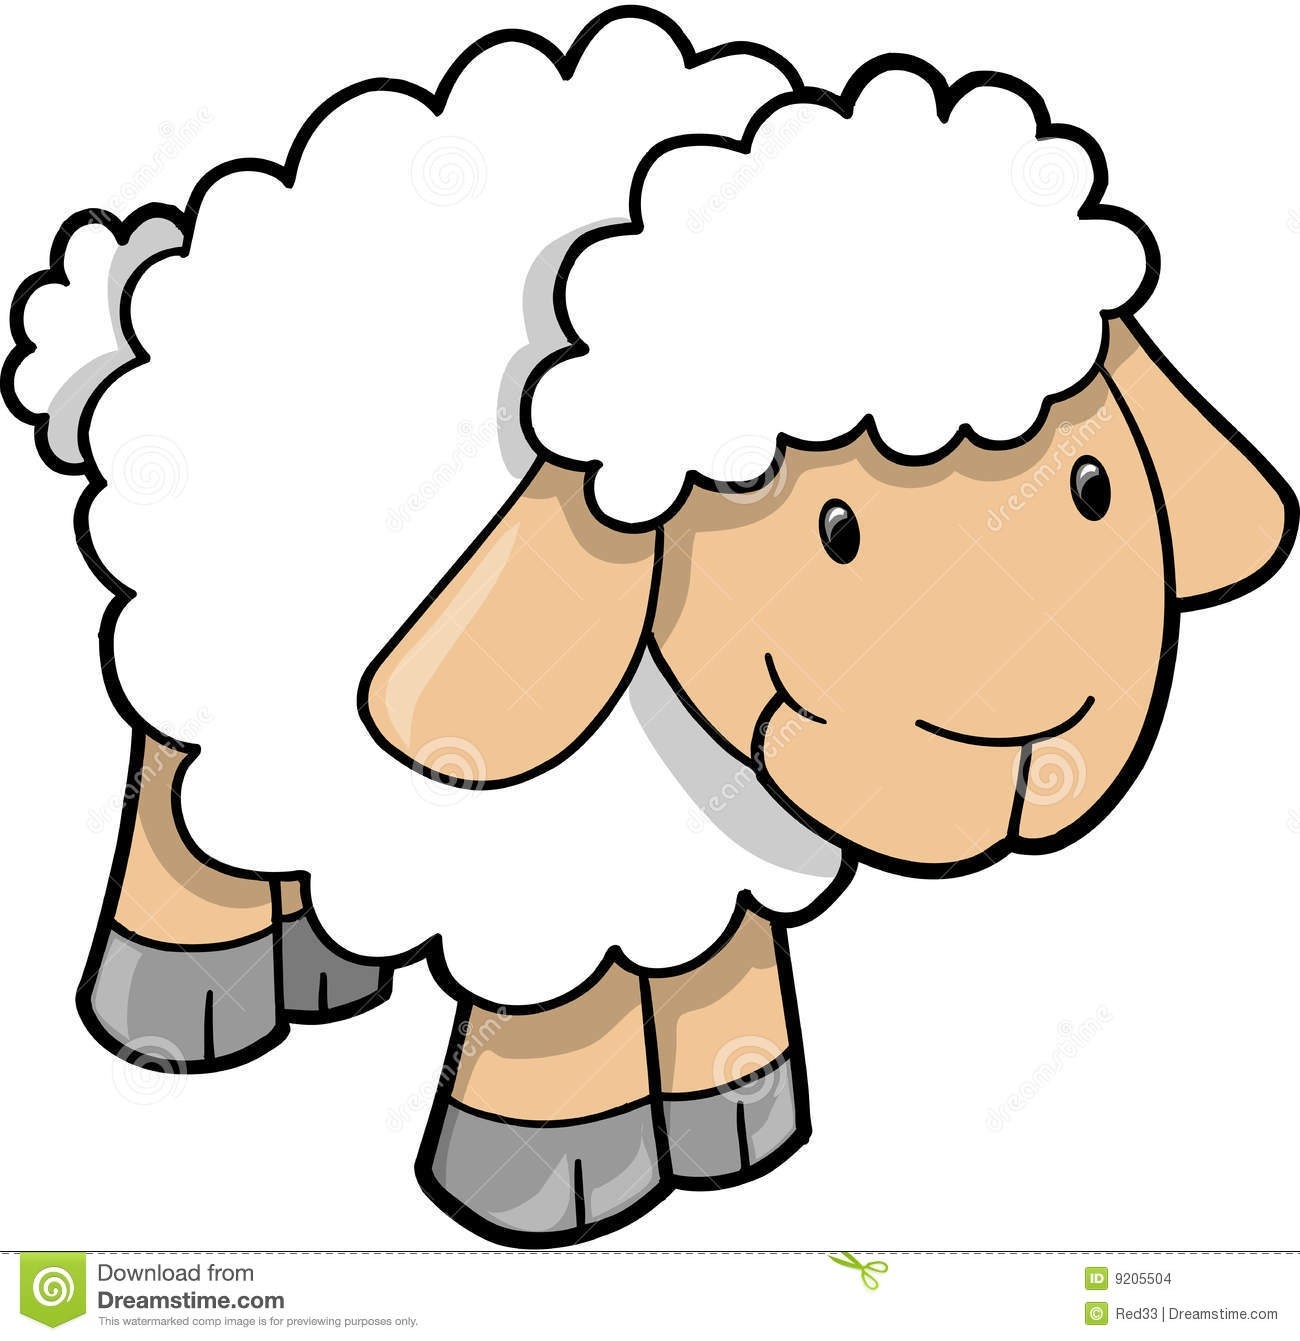 Cute sheep lamb.